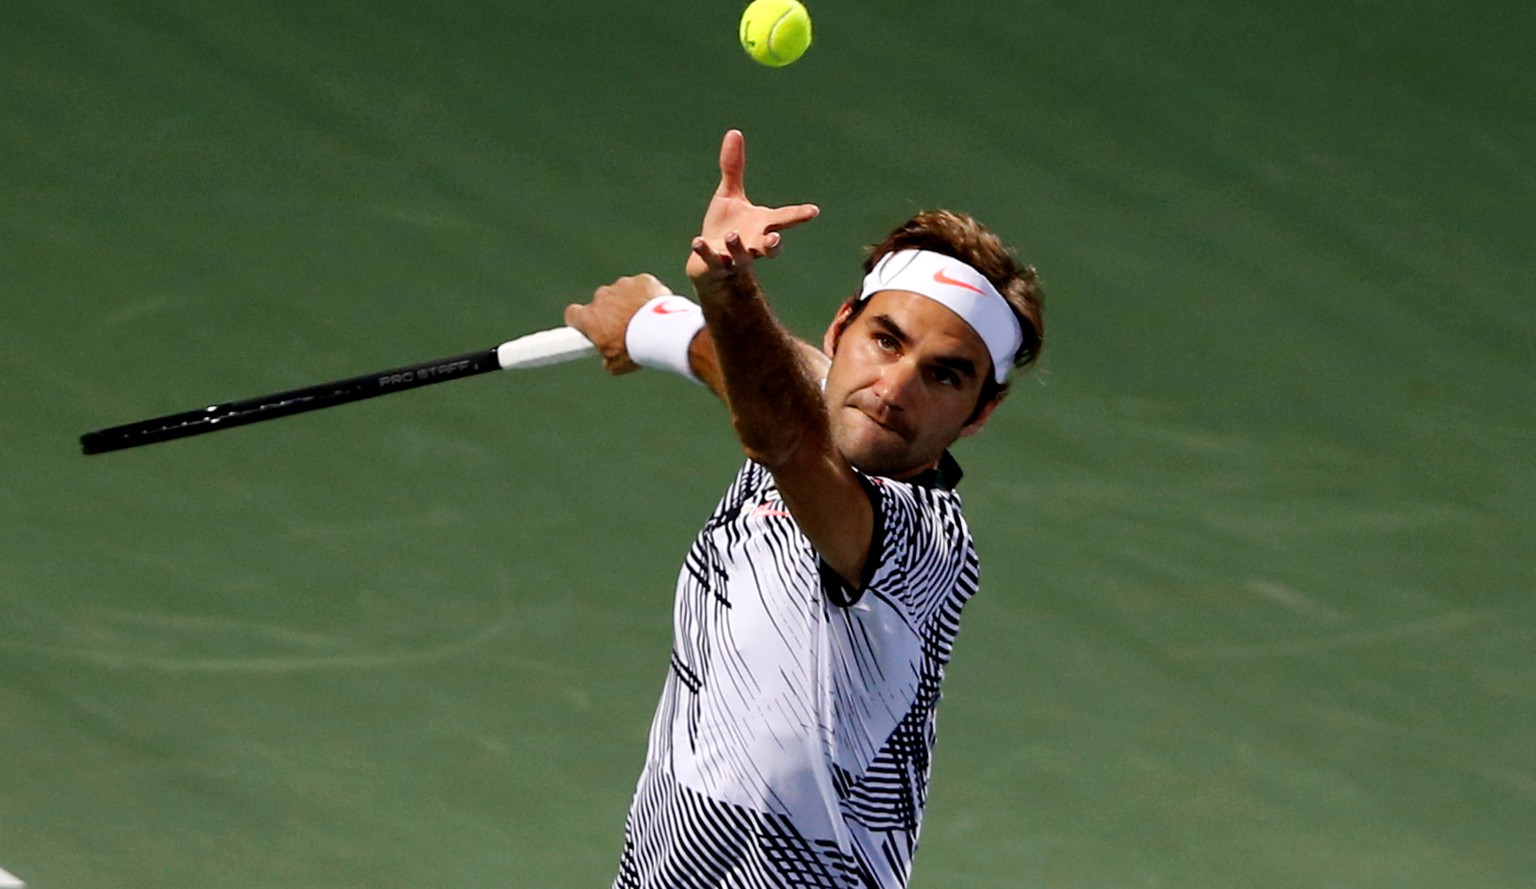 Tennis - Dubai Open - Men&#039;s Singles - Roger Federer of Switzerland v Benoit Paire of France - Dubai, UAE - 27/2/2017 - Roger Federer in action. REUTERS/Ahmed Jadallah